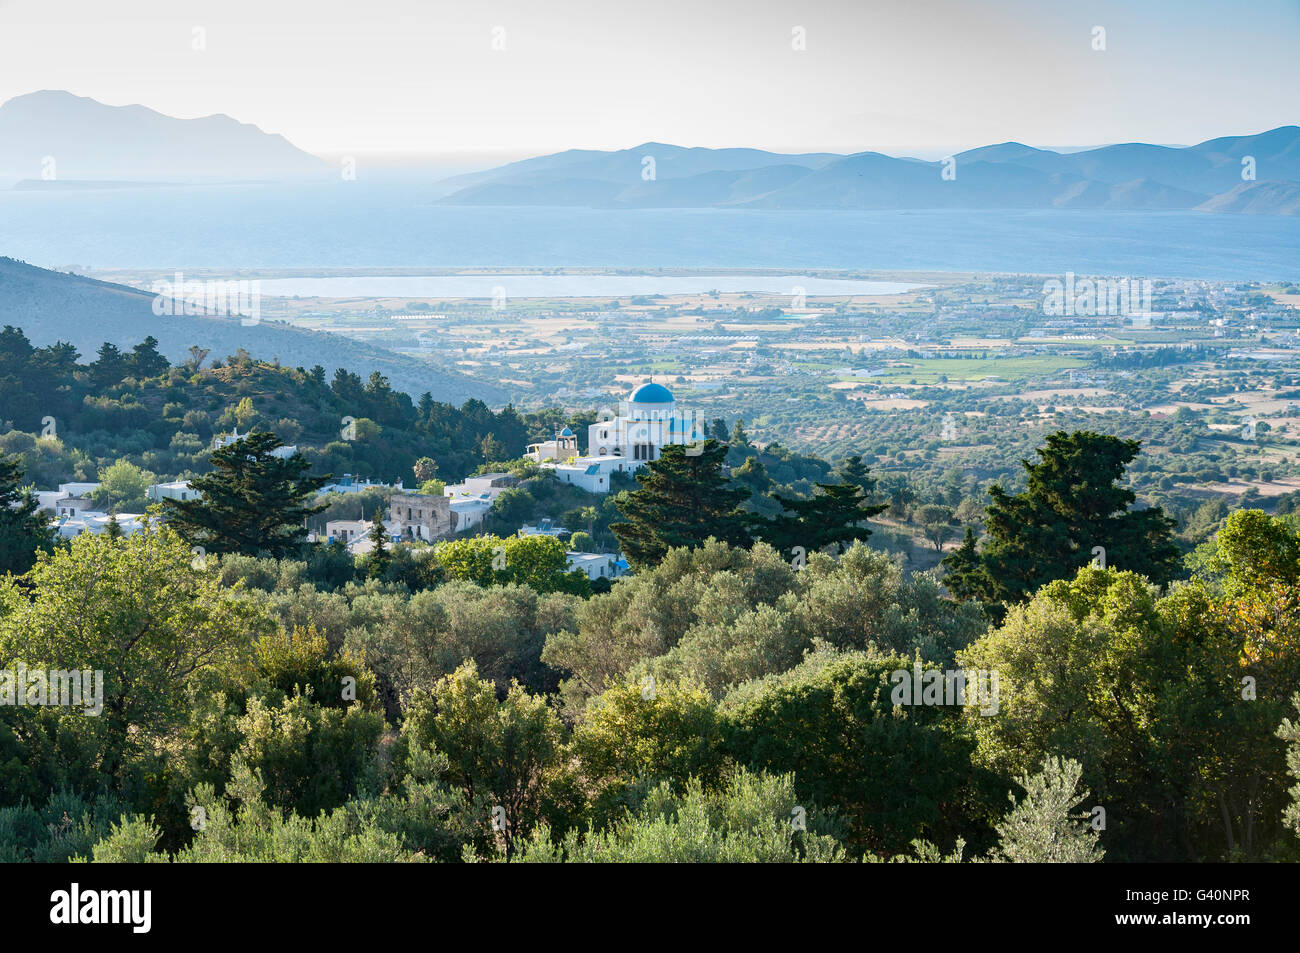 Vue sur le village de Zia paysage village sur une colline, Kos (Cos), du Dodécanèse, Grèce, région sud de la Mer Egée Banque D'Images